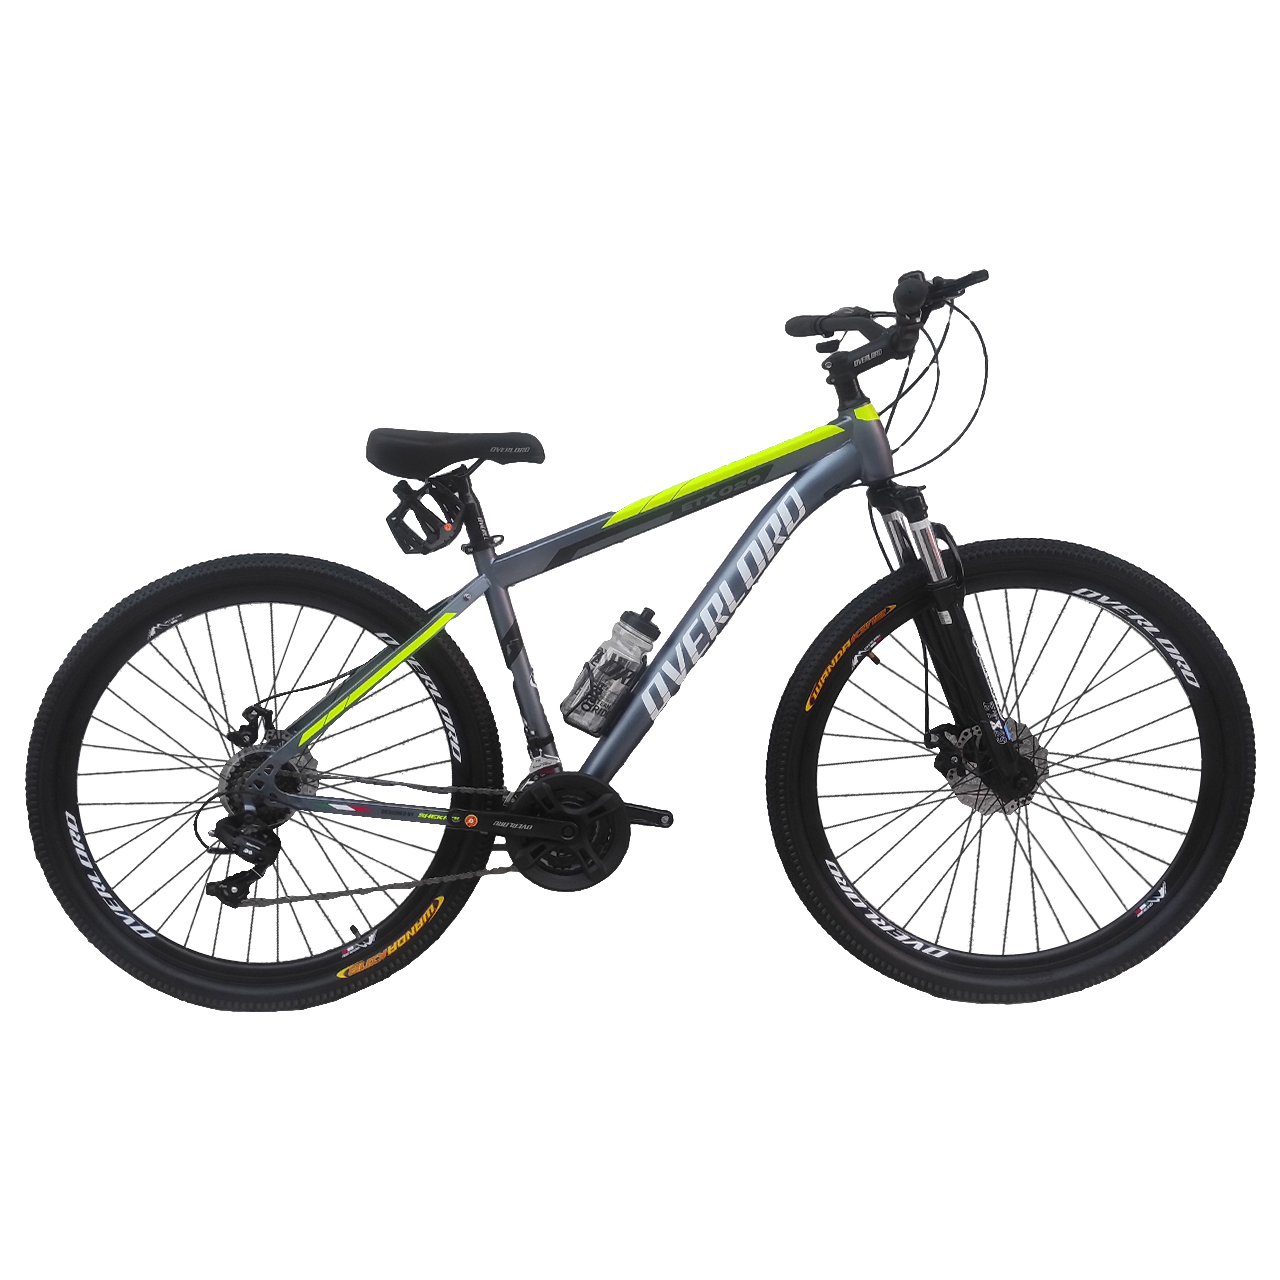 نکته خرید - قیمت روز دوچرخه کوهستان اورلورد مدل Etx020 سایز 26 خرید